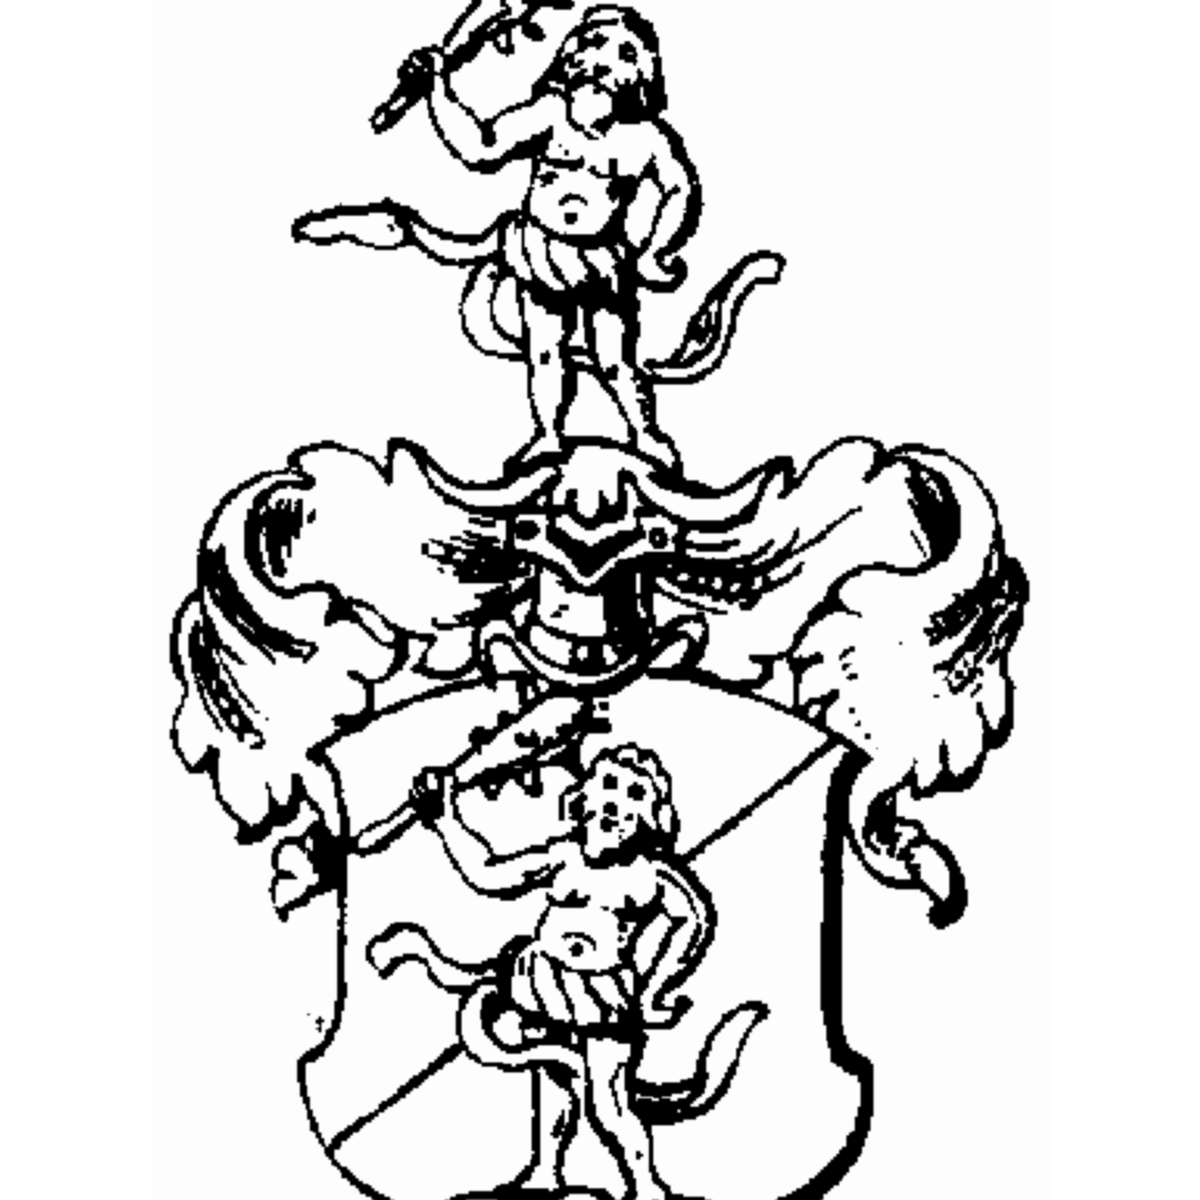 Wappen der Familie Anderson